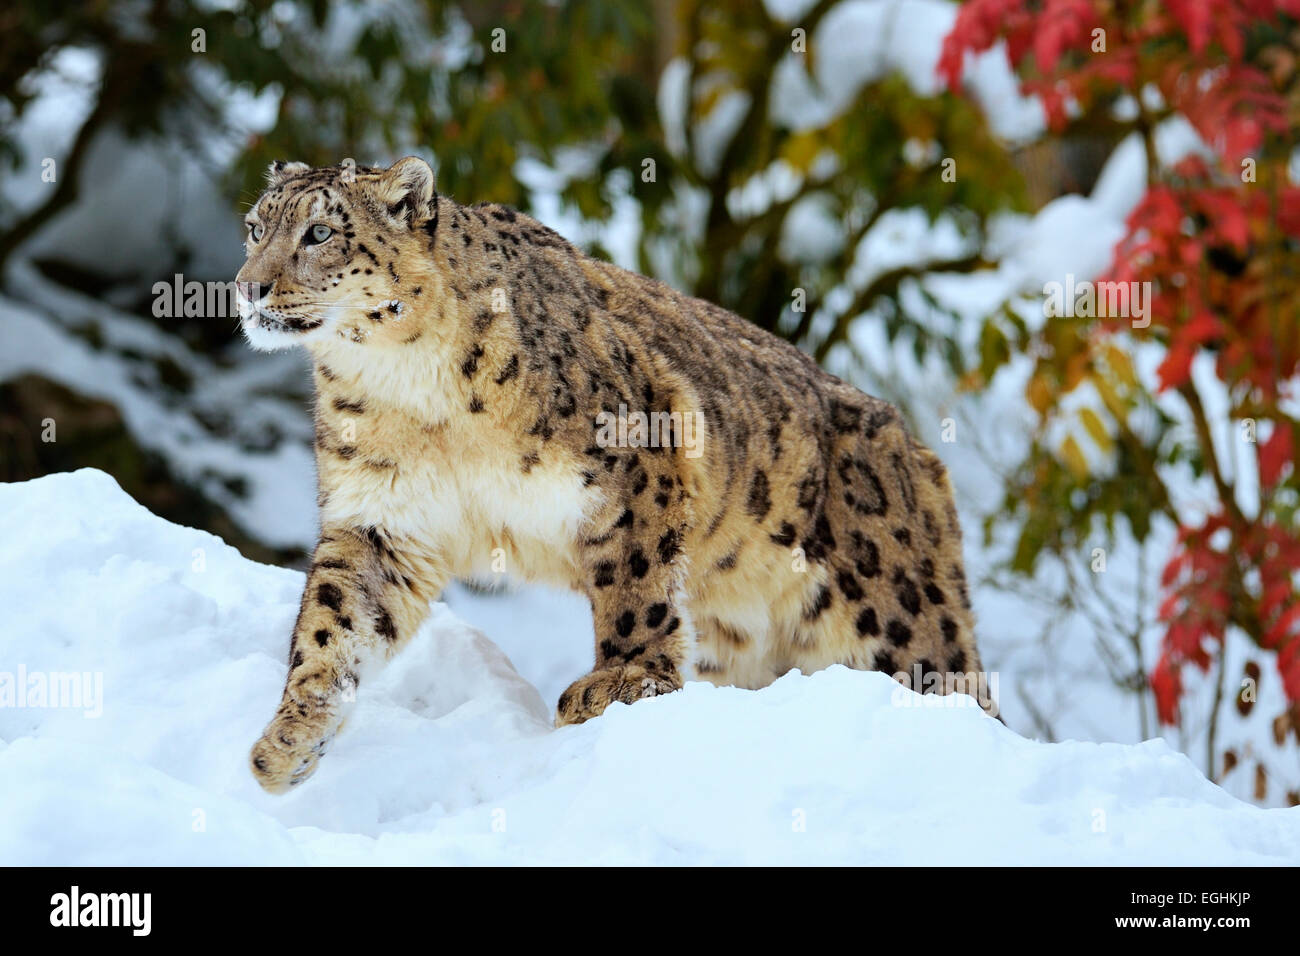 Snow Leopard (Panthera uncia), homme dans la neige, captive, Suisse Banque D'Images